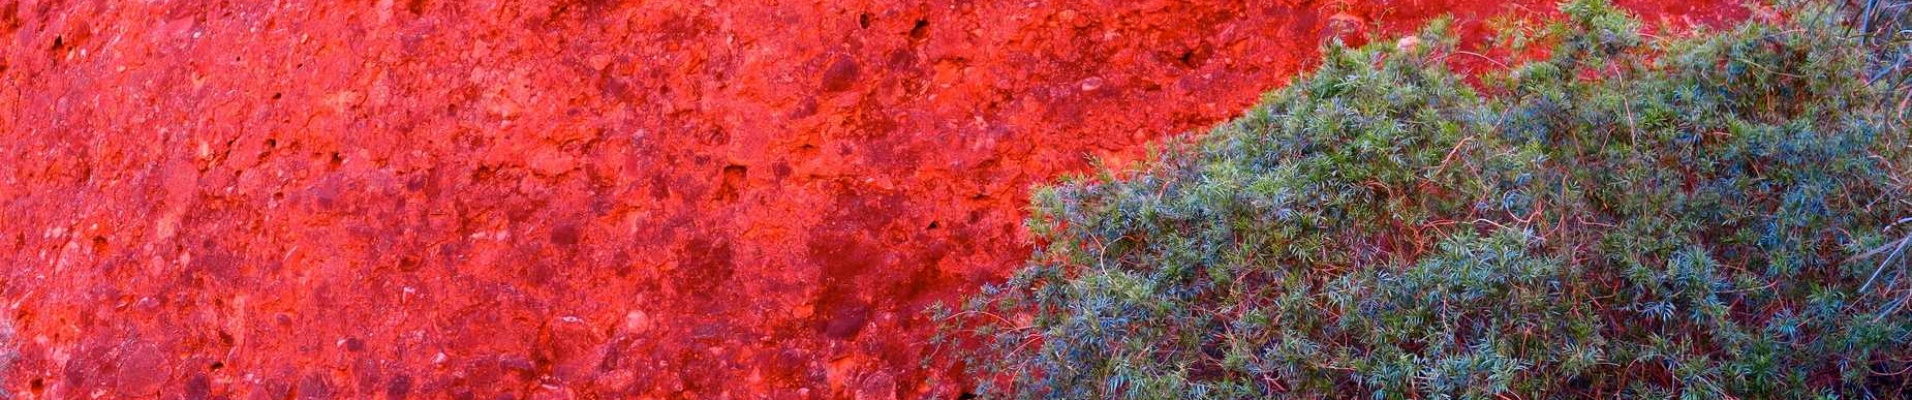 Murs rouges et feuillages verts de l'outback